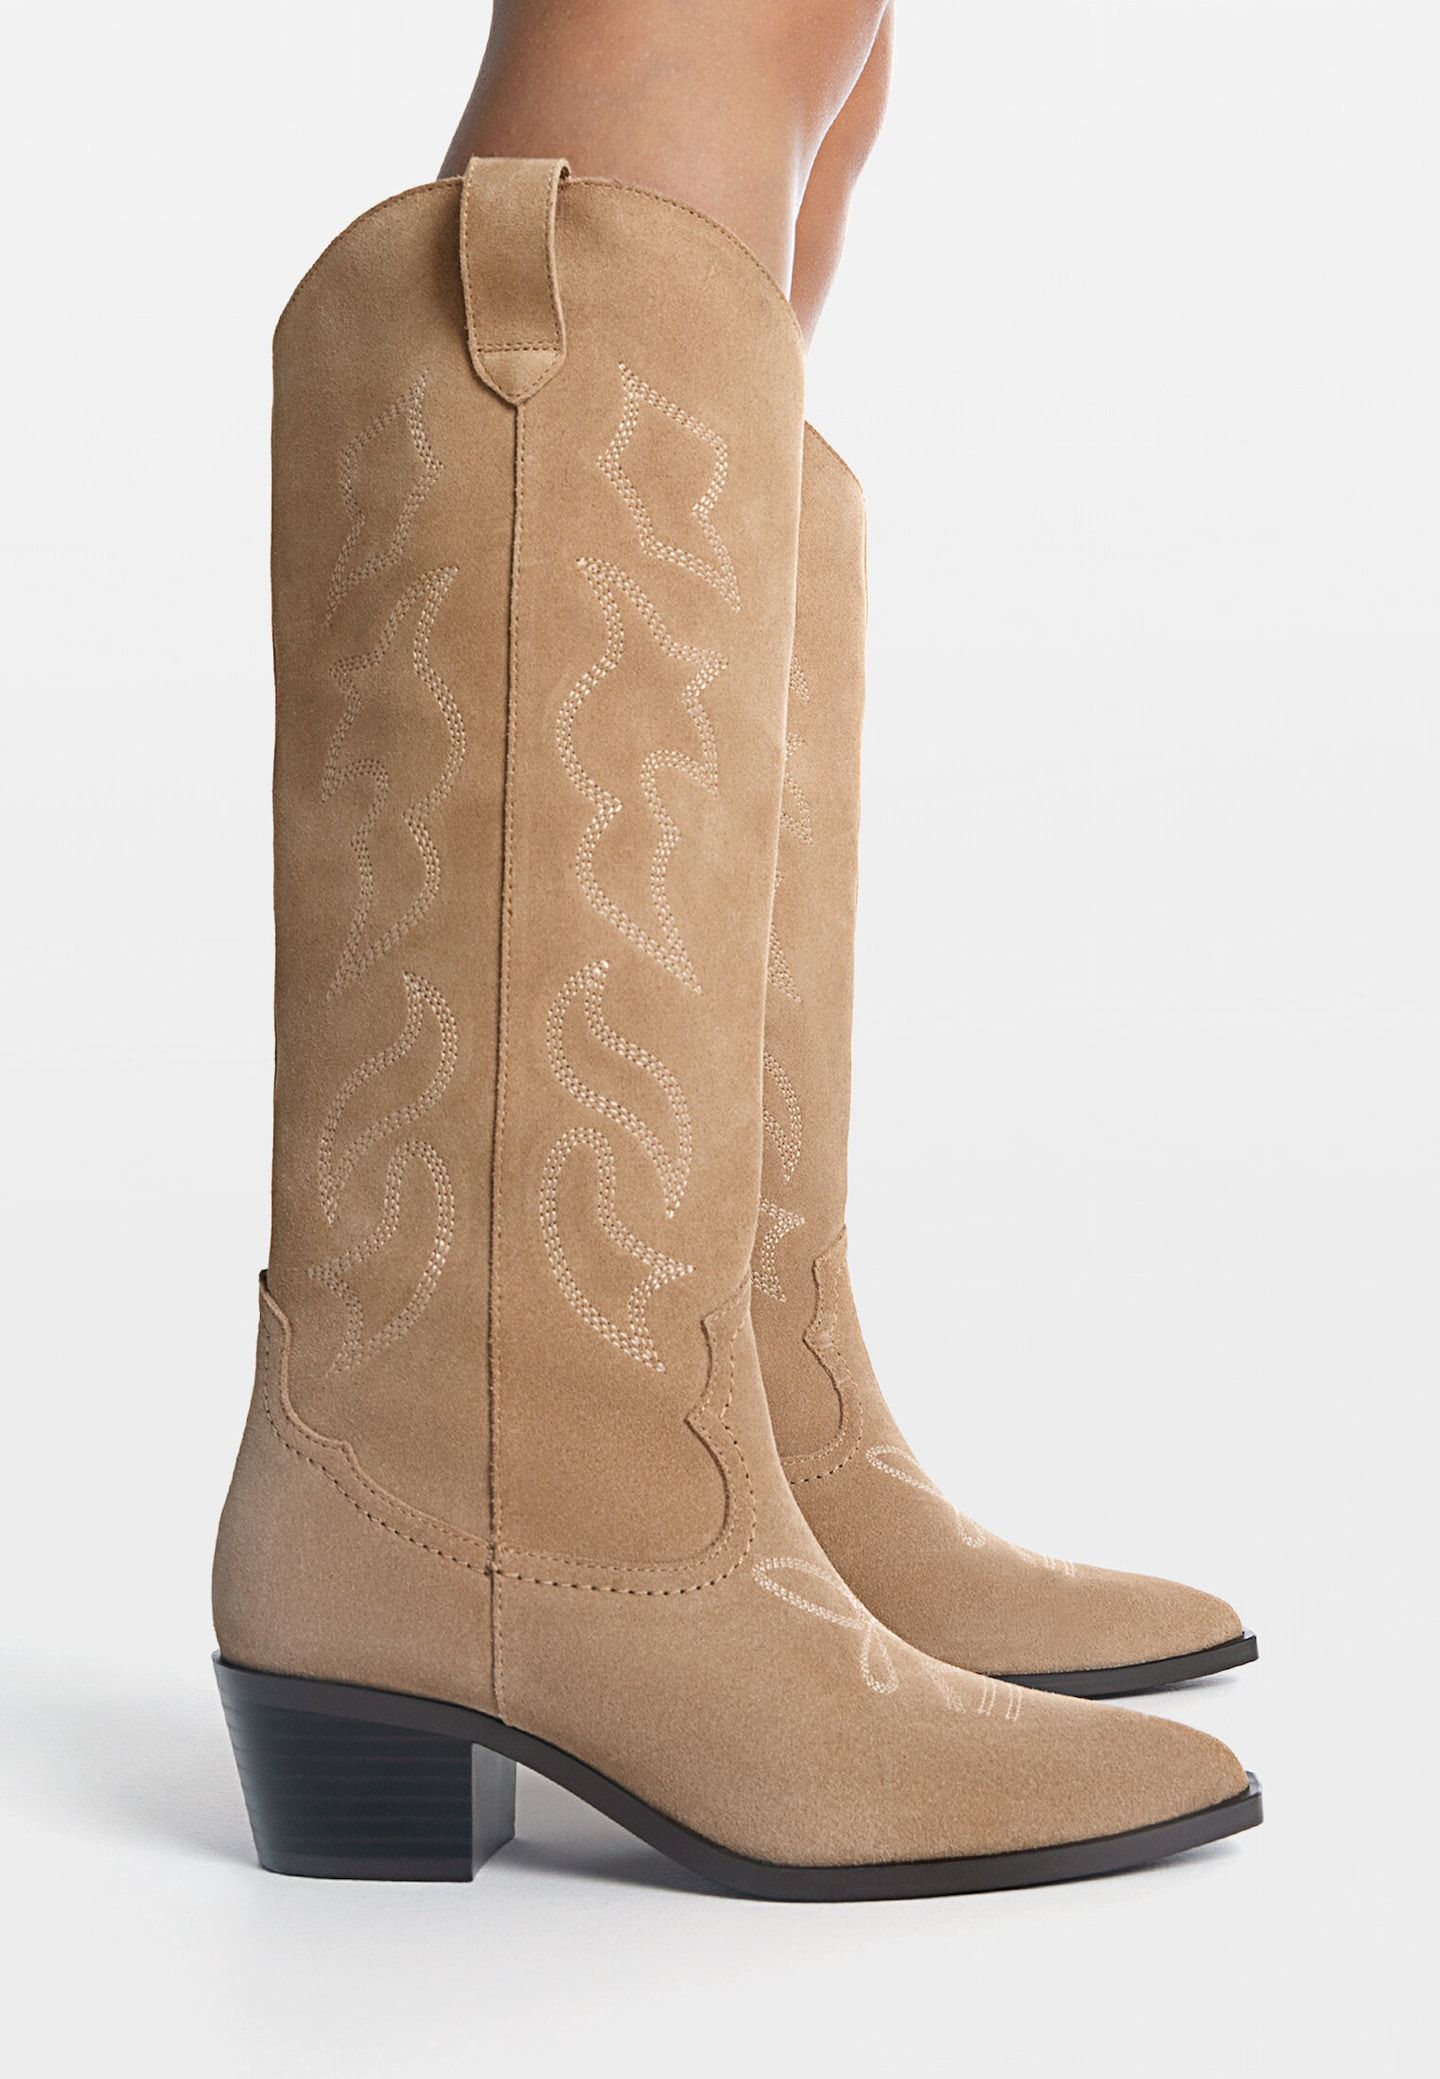 Leather cowboy boots - Women's fashion | Stradivarius United Kingdom | Stradivarius (UK)